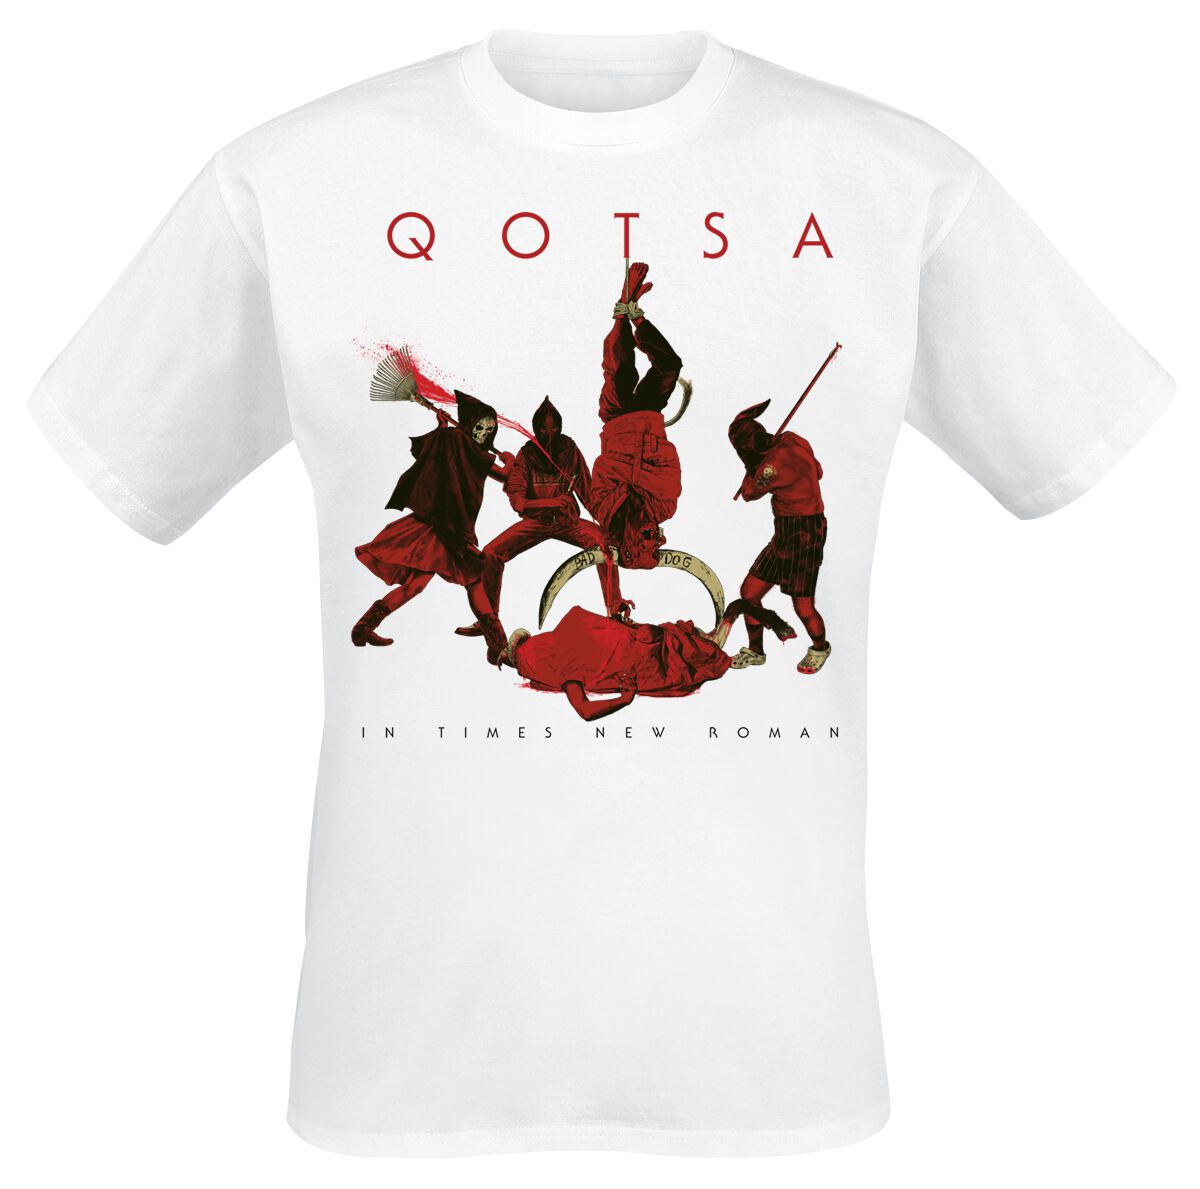 Queens Of The Stone Age T-Shirt - In Times New Roman - Emotion Sickness - S bis 3XL - für Männer - Größe 3XL - weiß  - Lizenziertes Merchandise!